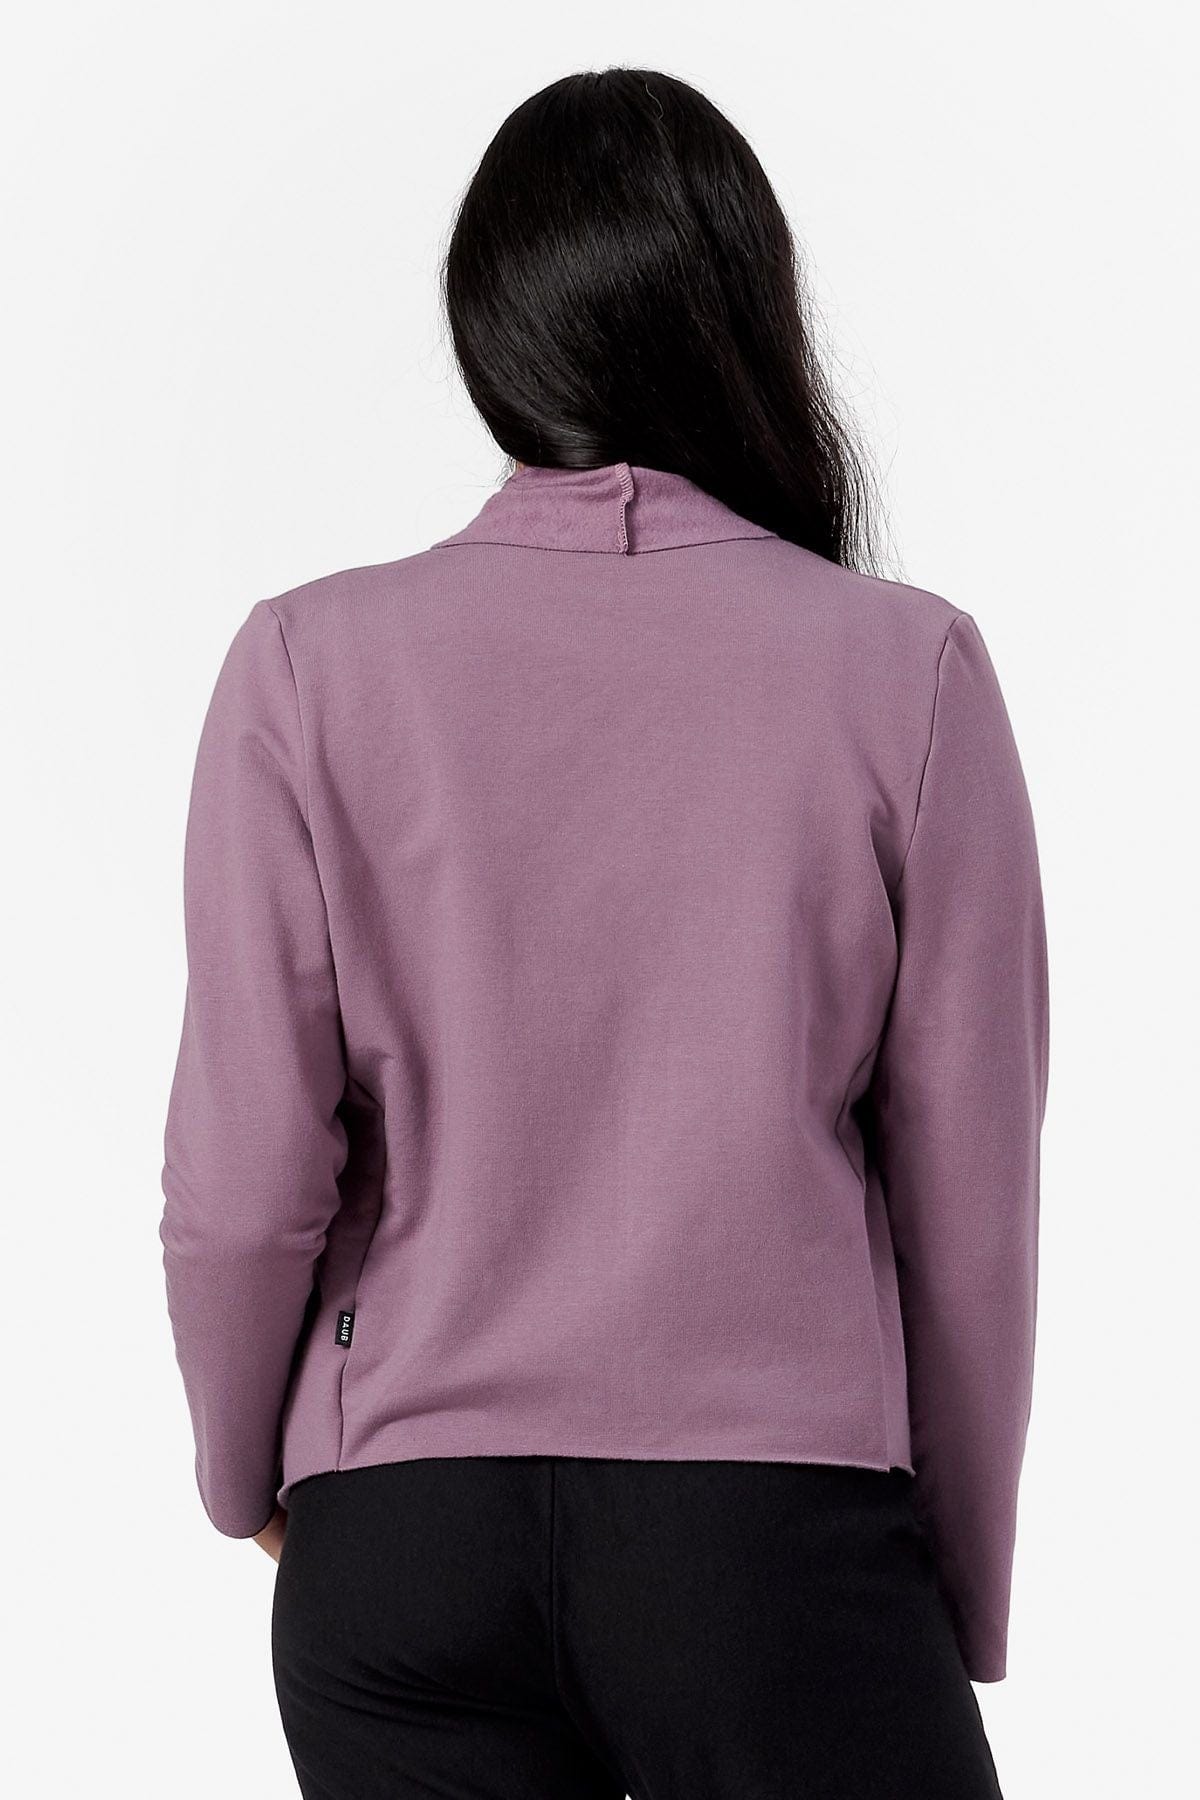 Back of a woman wearing a purple jacket